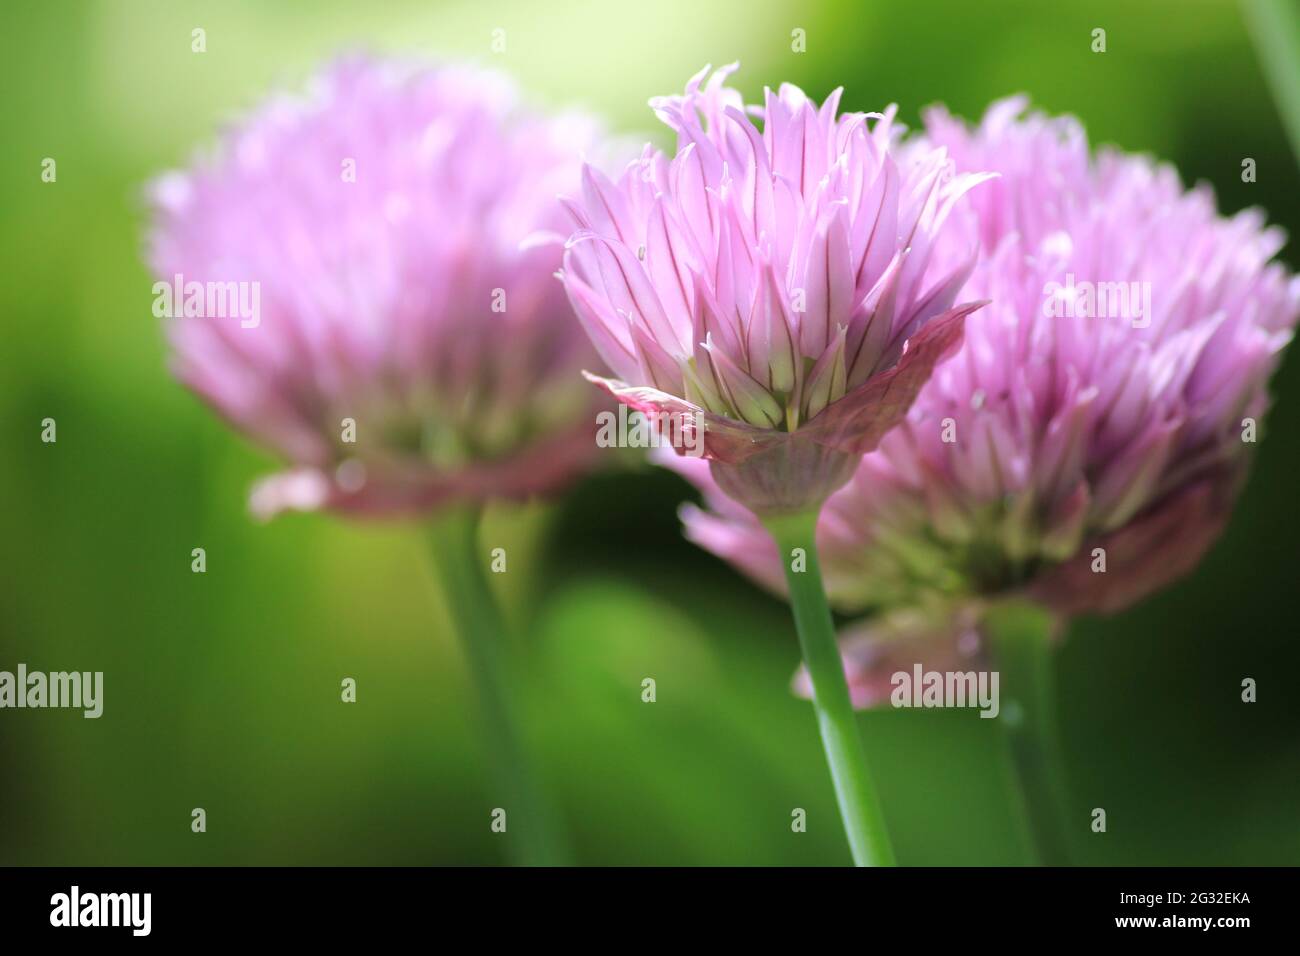 Allium maximowiczii Stock Photo